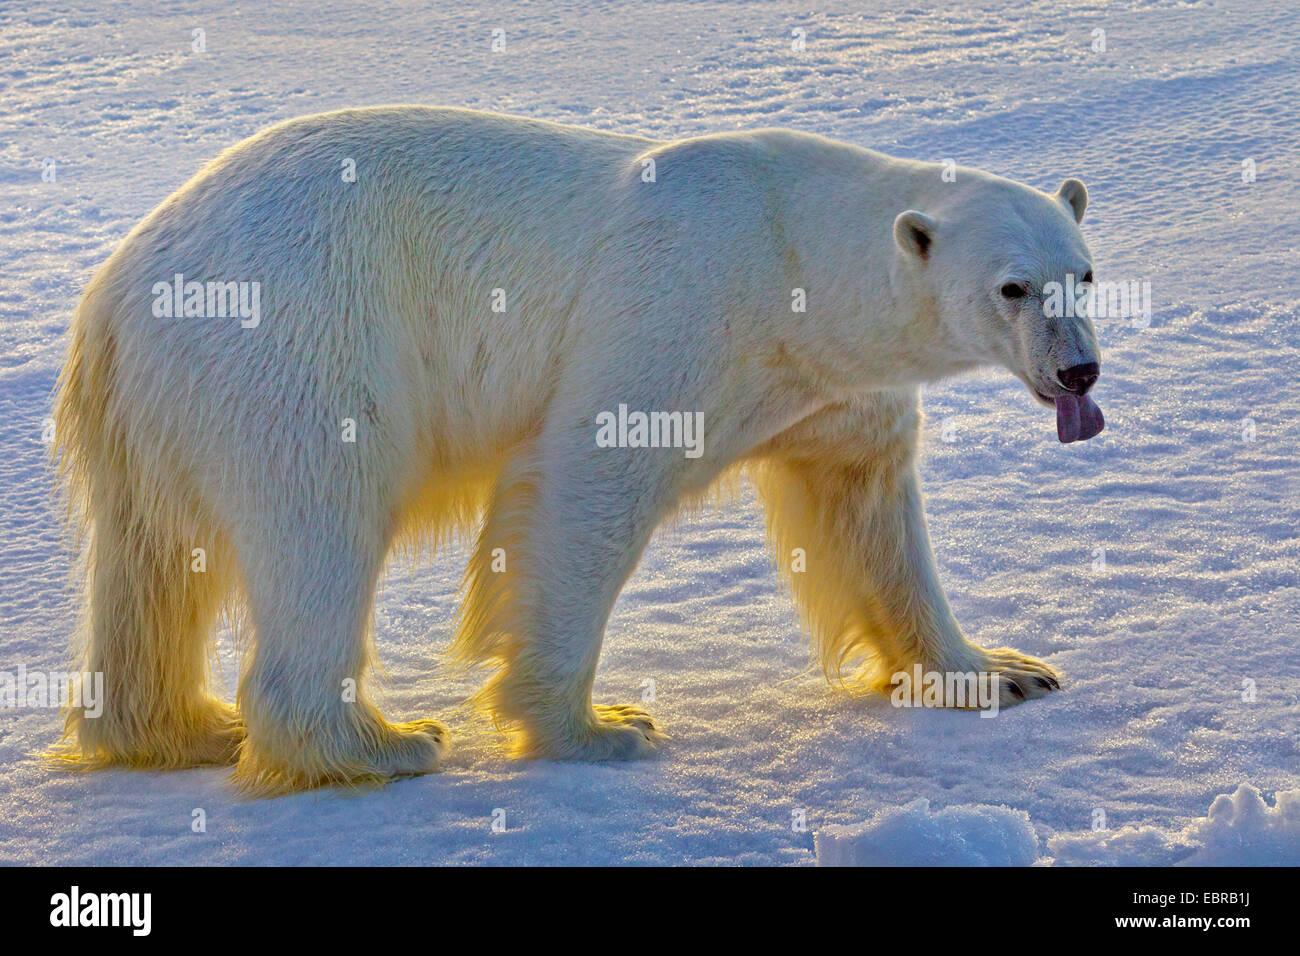 Orso polare (Ursus maritimus), con la lingua penzoloni, Norvegia Isole Svalbard Foto Stock